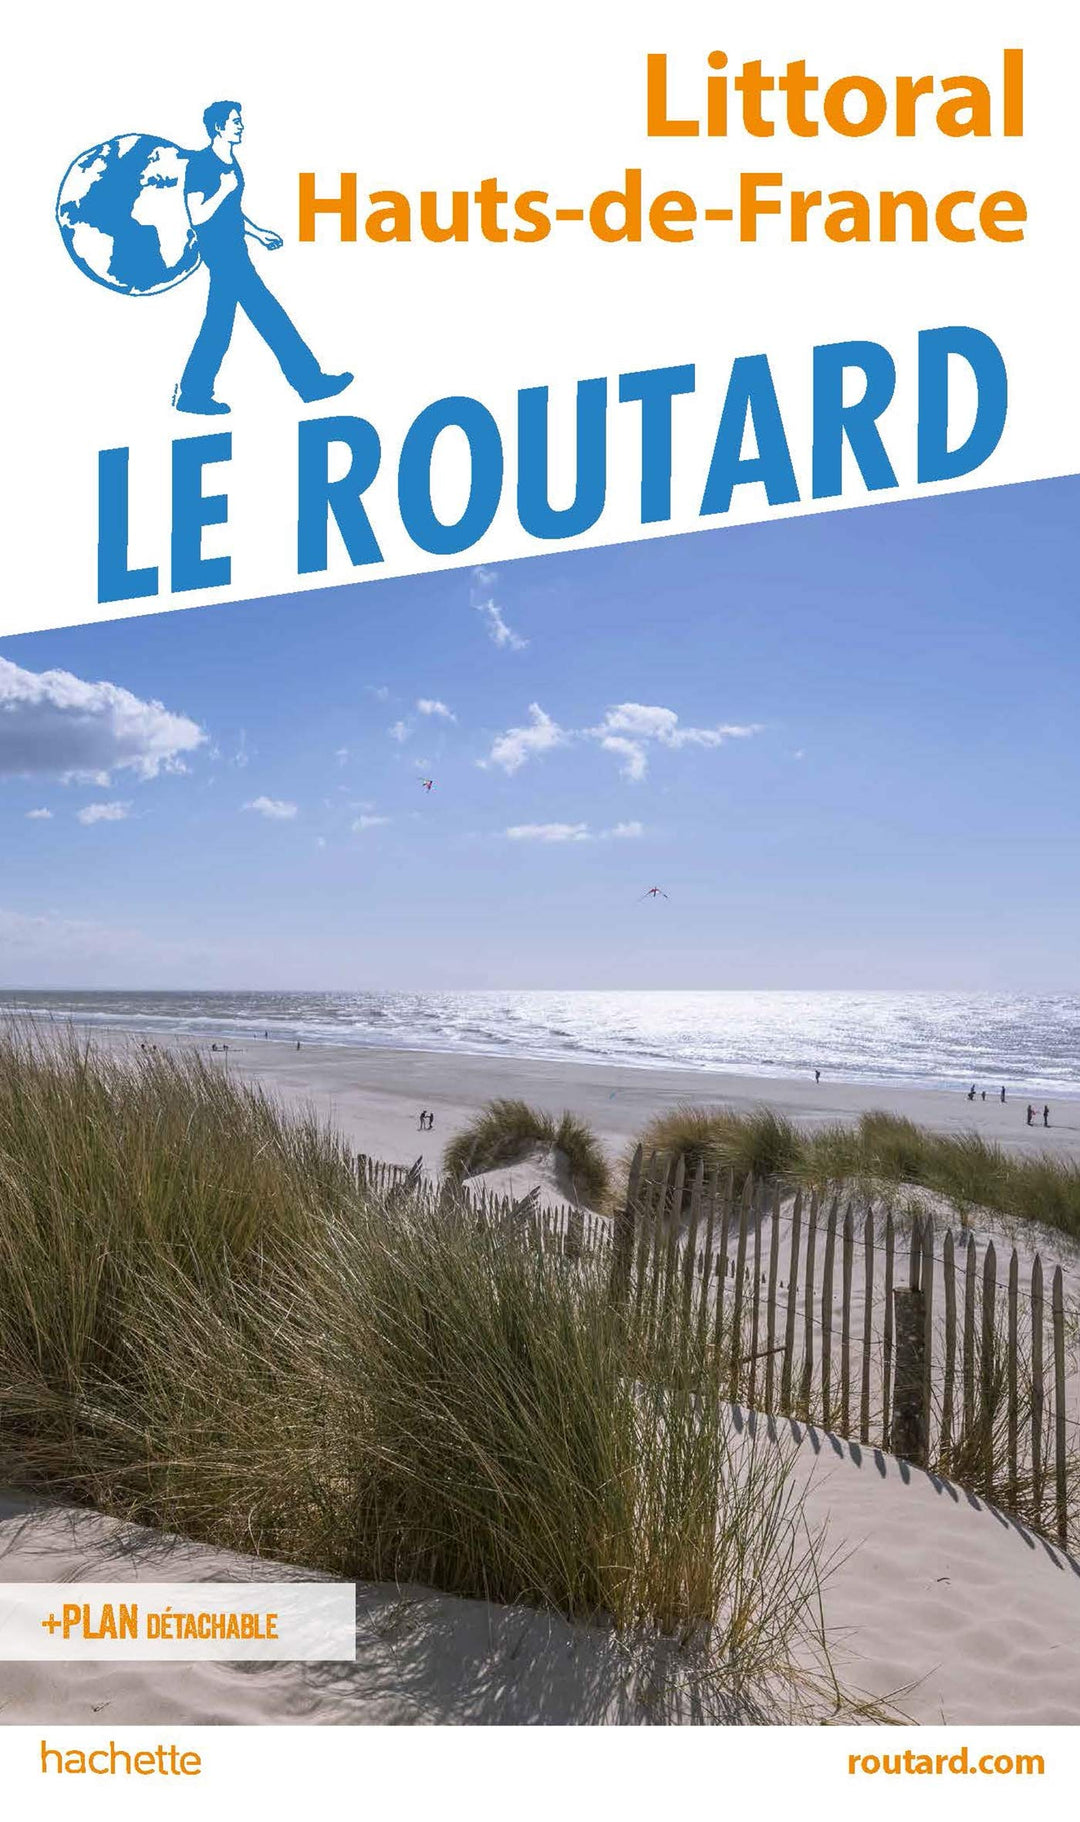 Guide du Routard - Littoral, Hauts-de-France 2019/20 | Hachette guide de voyage Hachette 